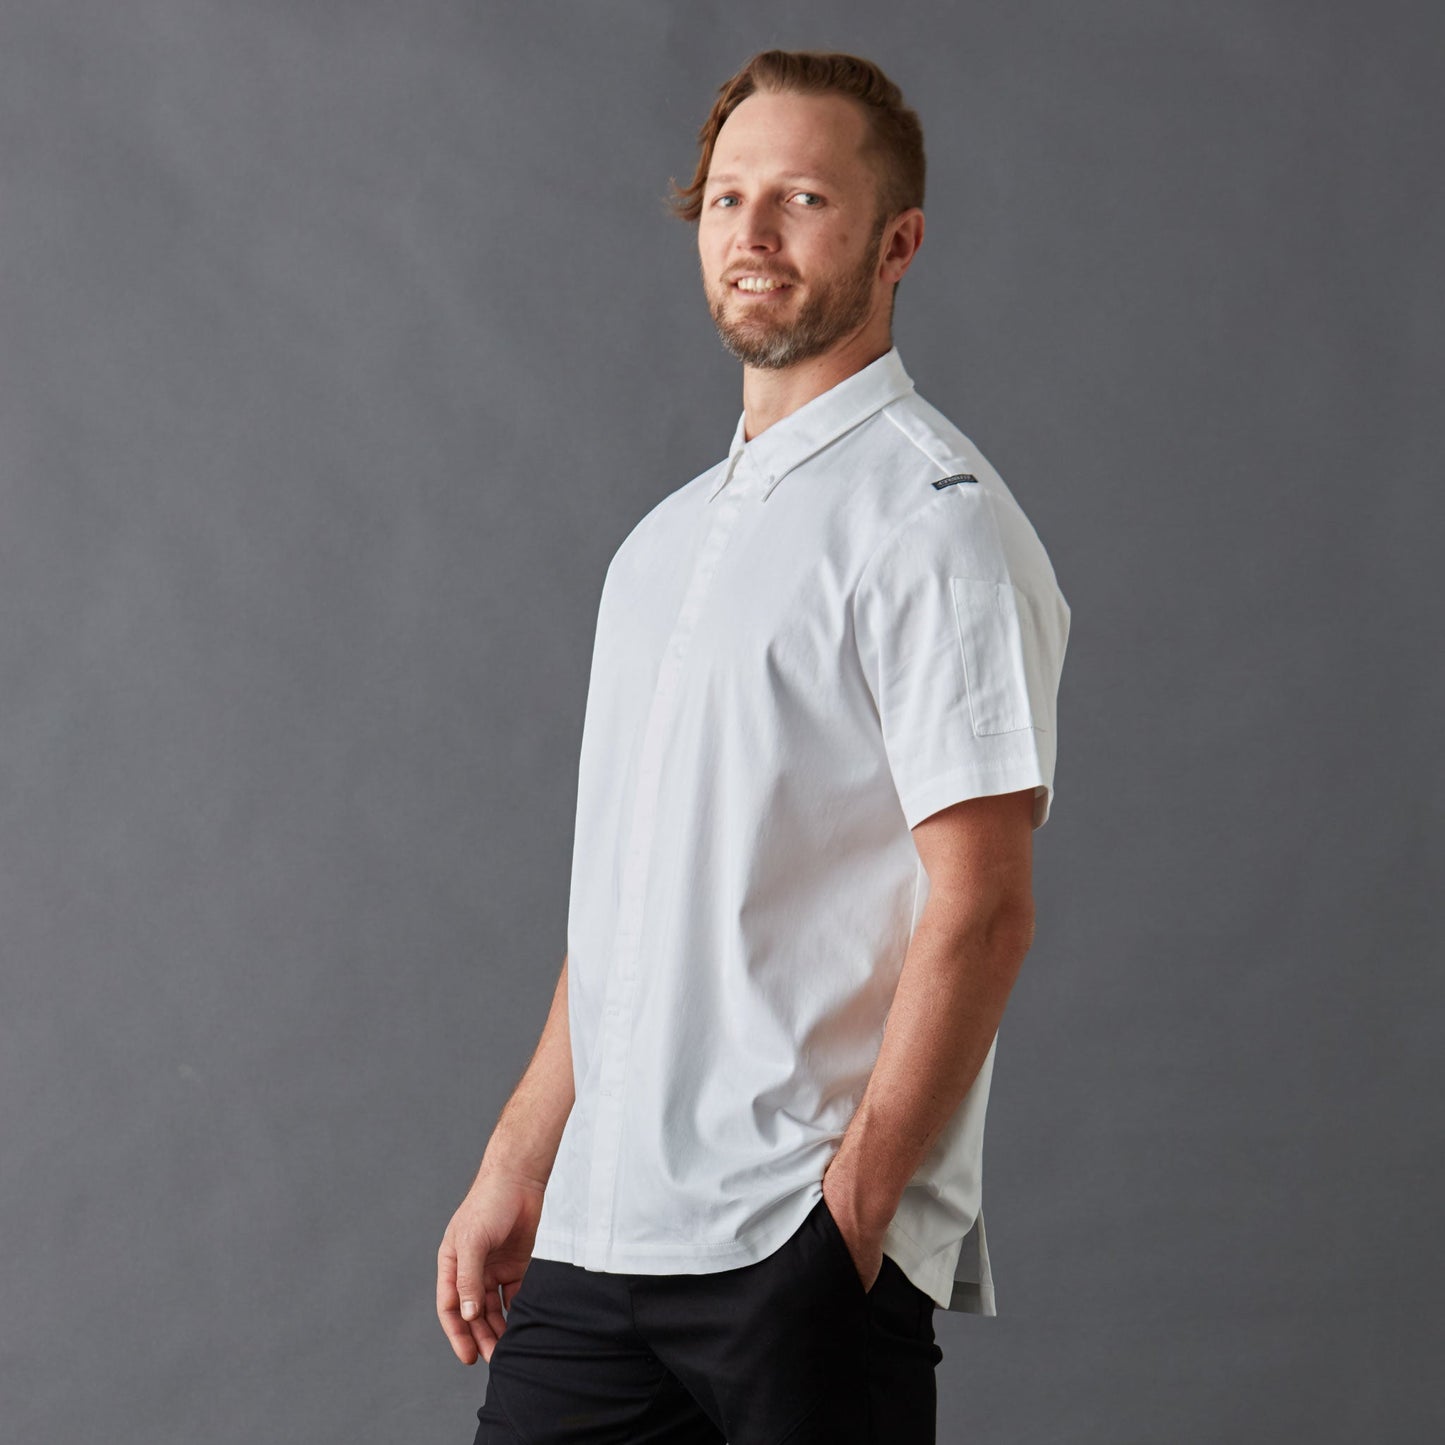 Men's White Chef Shirt Super Slick short sleeve